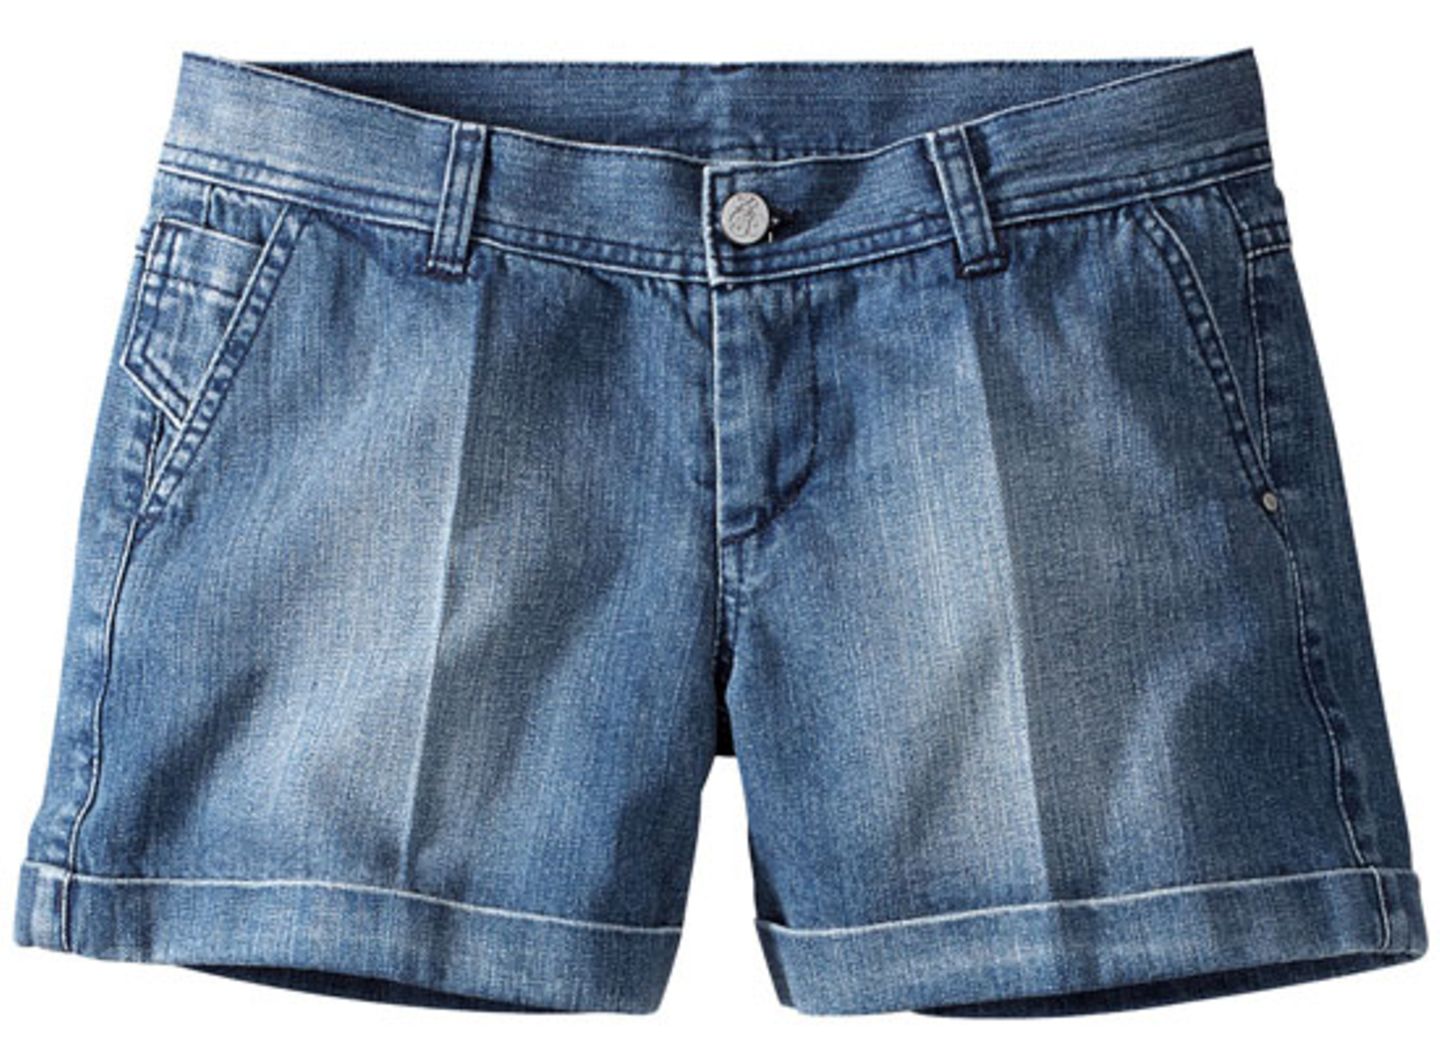 Jeans-Shorts von B.C.S über Conley's, um 40 Euro.